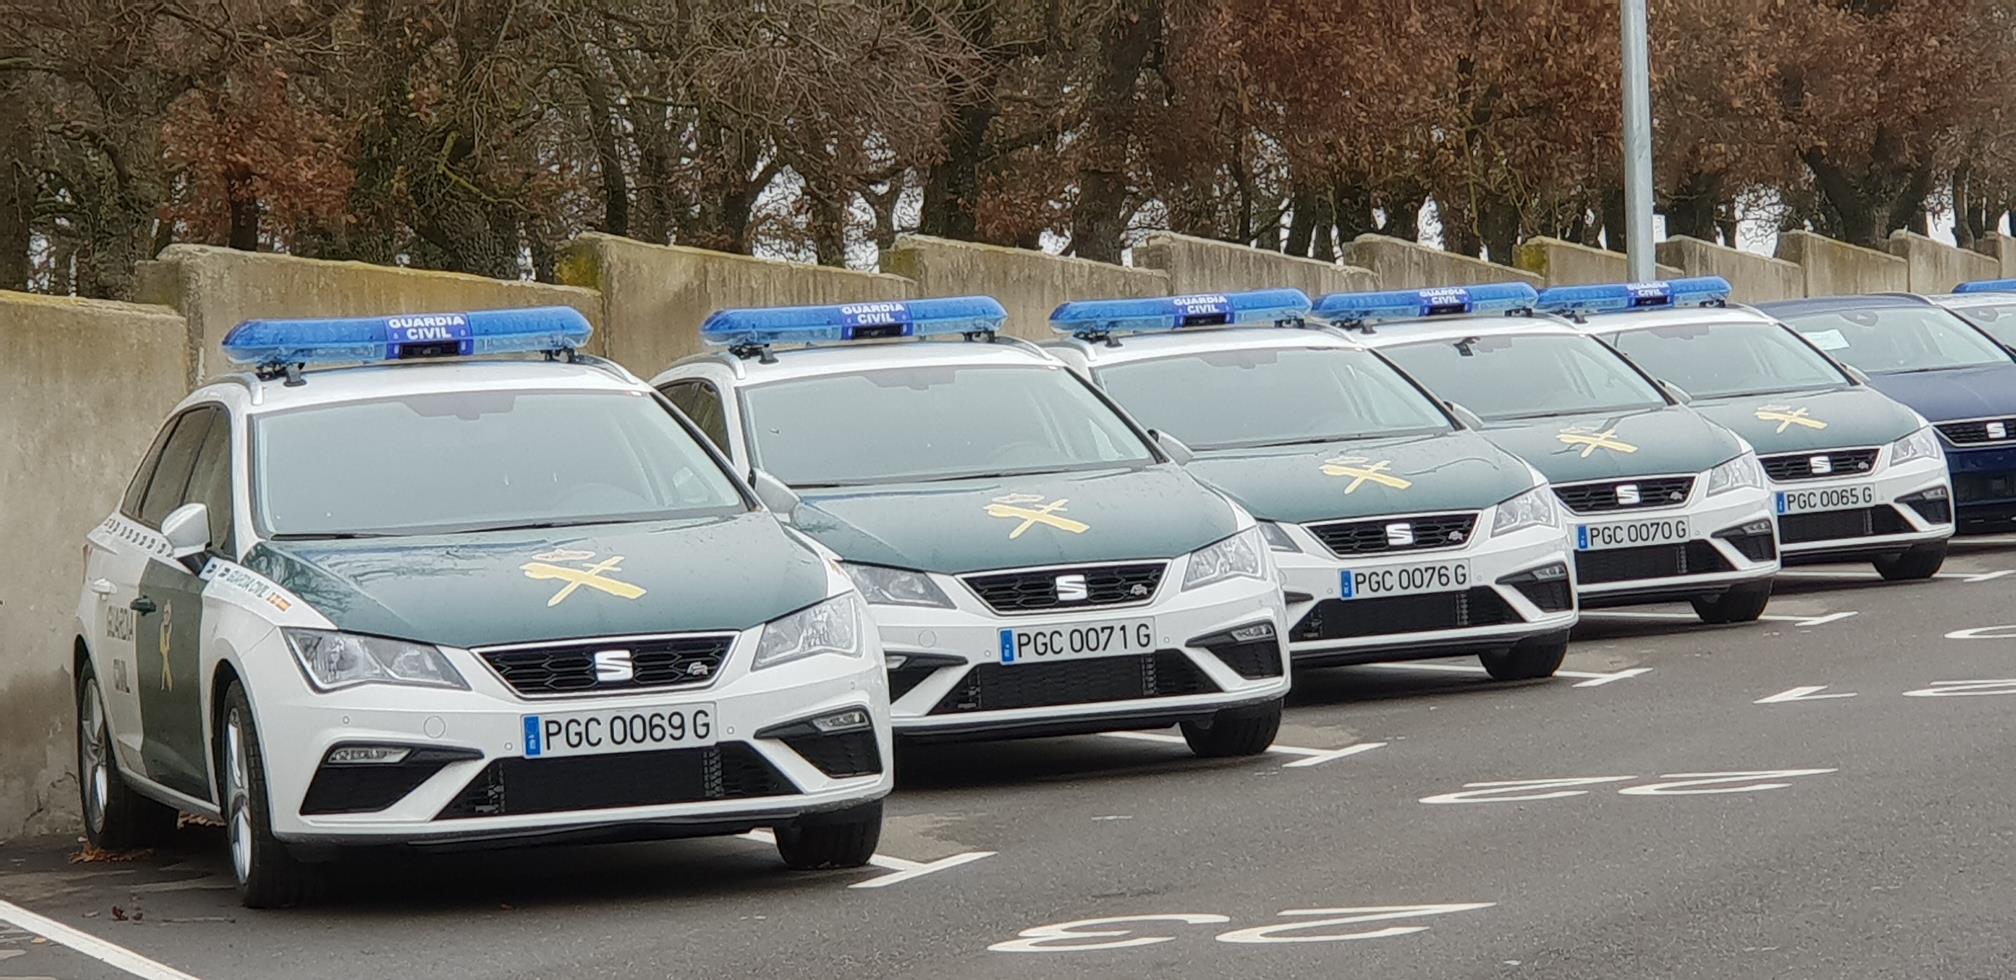 La Dirección General de la Guardia Civil ha adquirido 249 uds del SEAT León ST